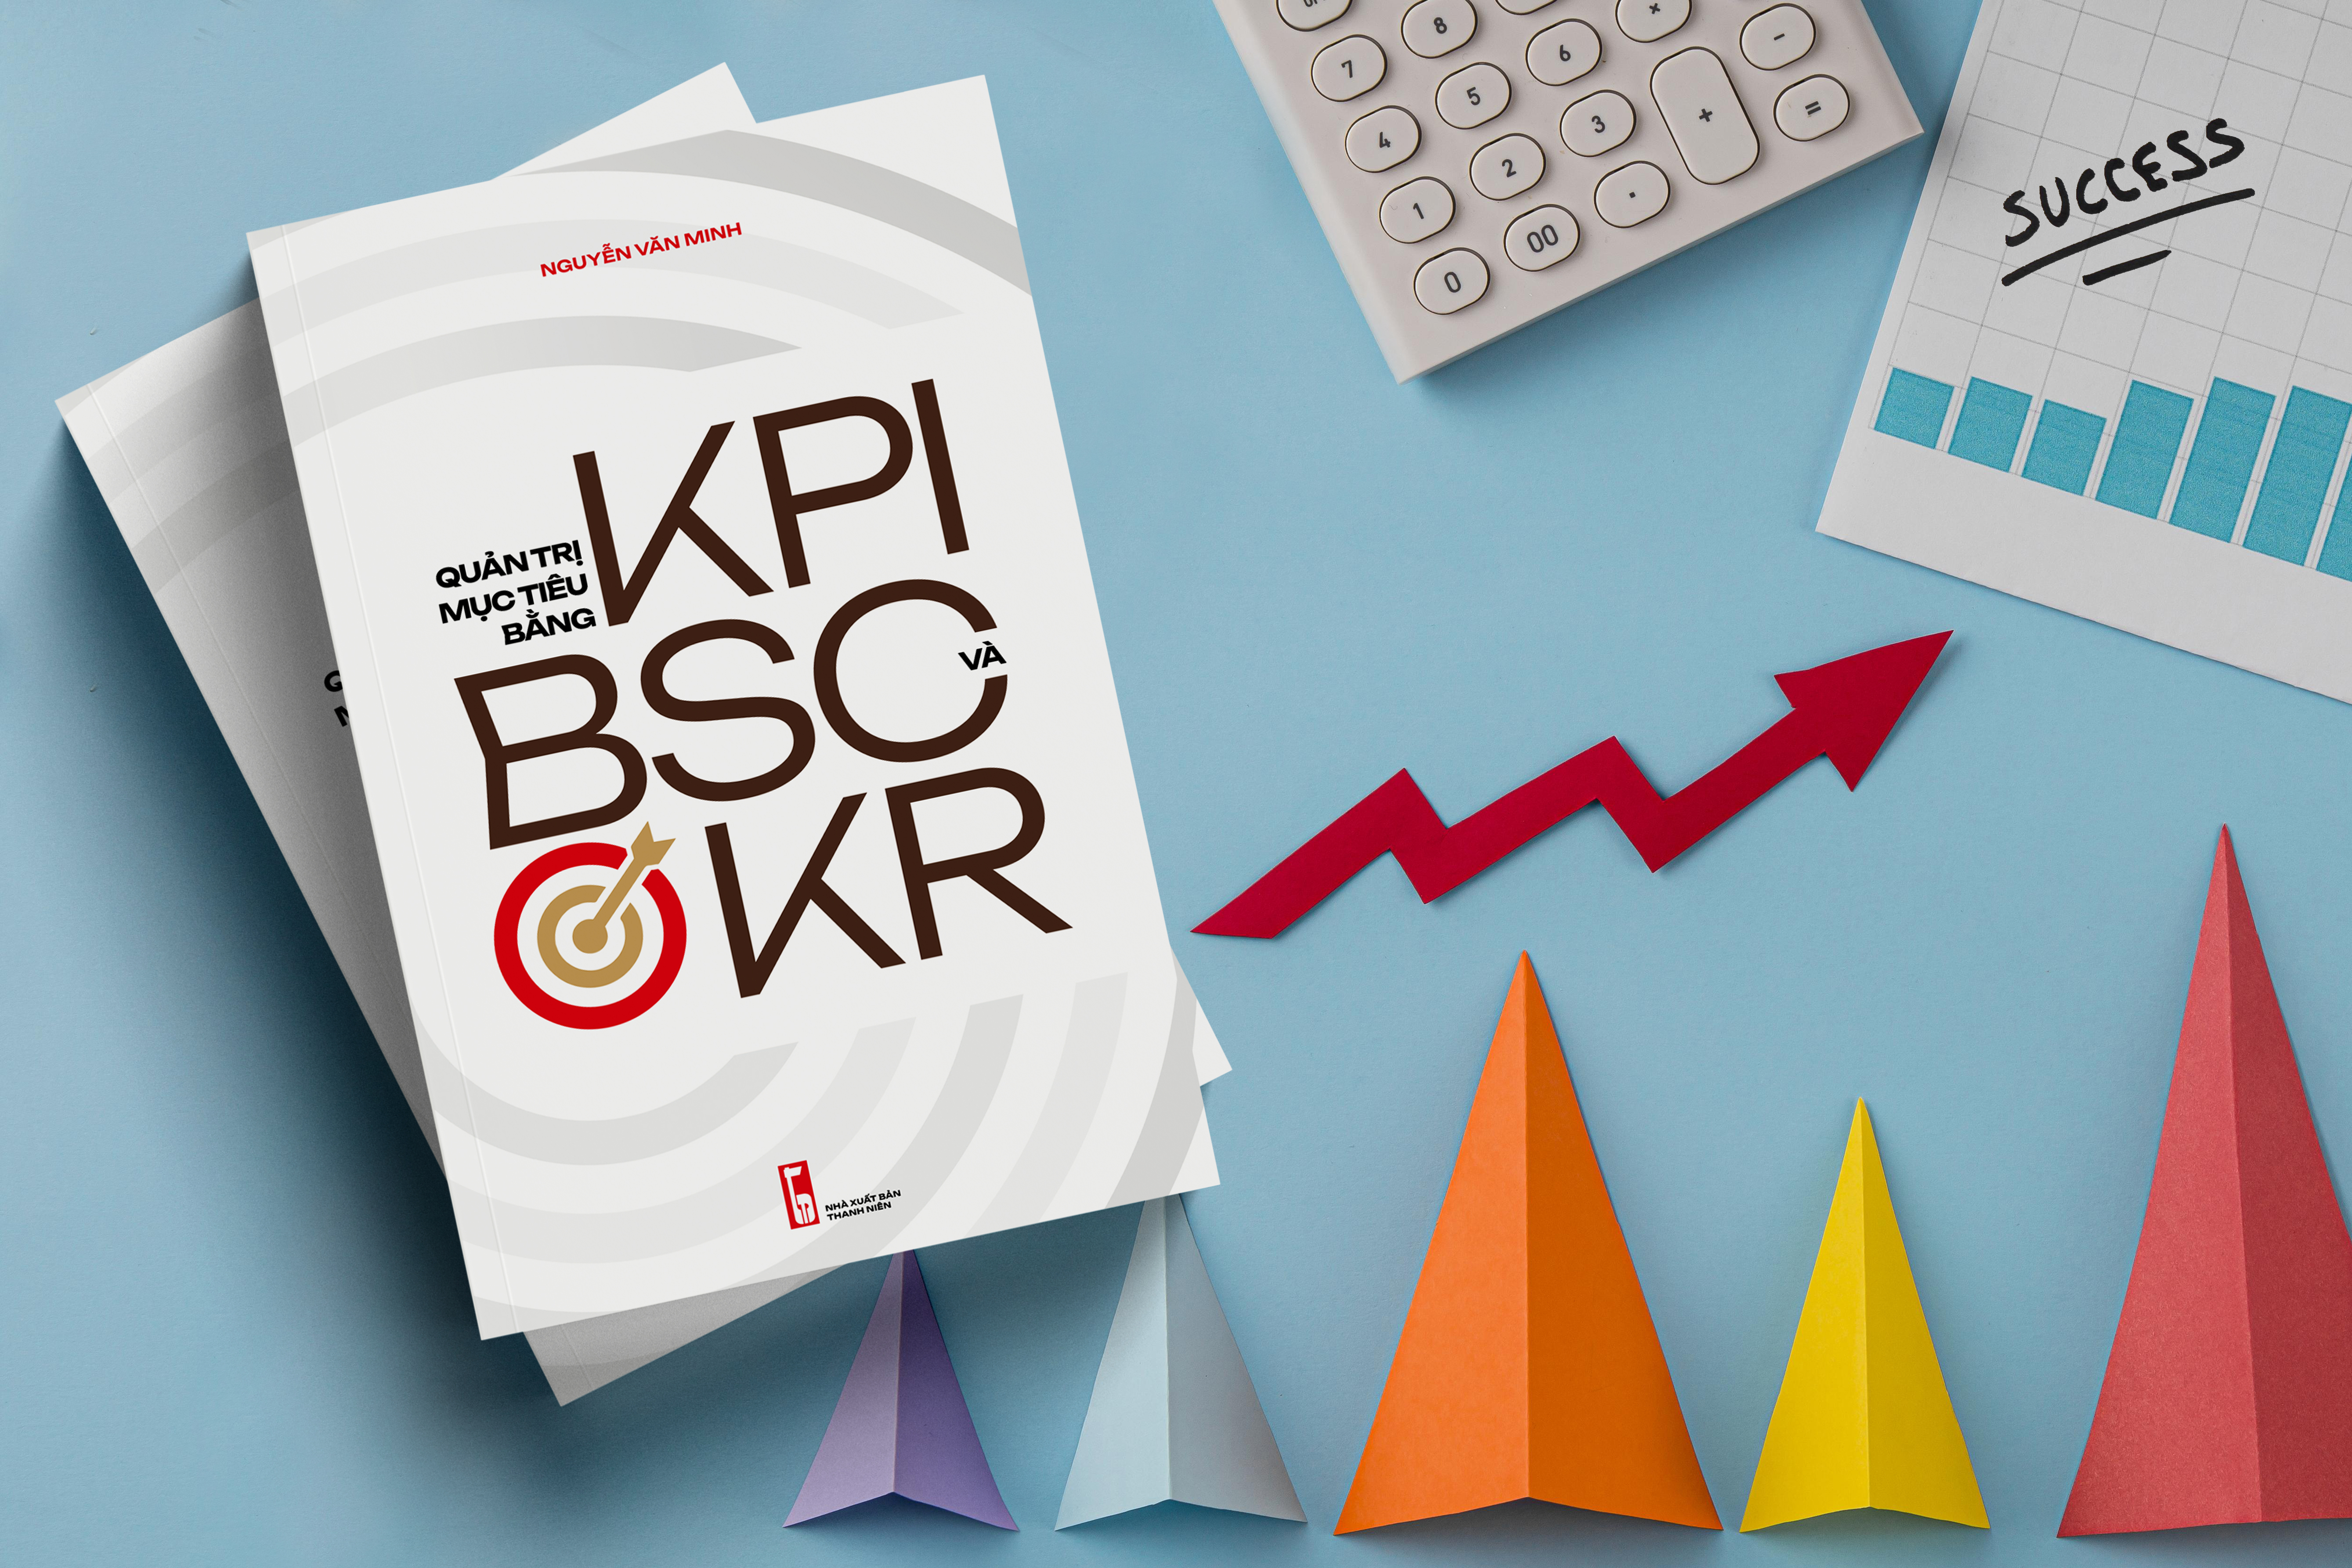 (Giảm 10%-15% giá bìa) Sách Quản trị, Sách Quản trị mục tiêu bằng KPI, BSC và OKR (Phương pháp, công cụ, biểu mẫu, tình huống)